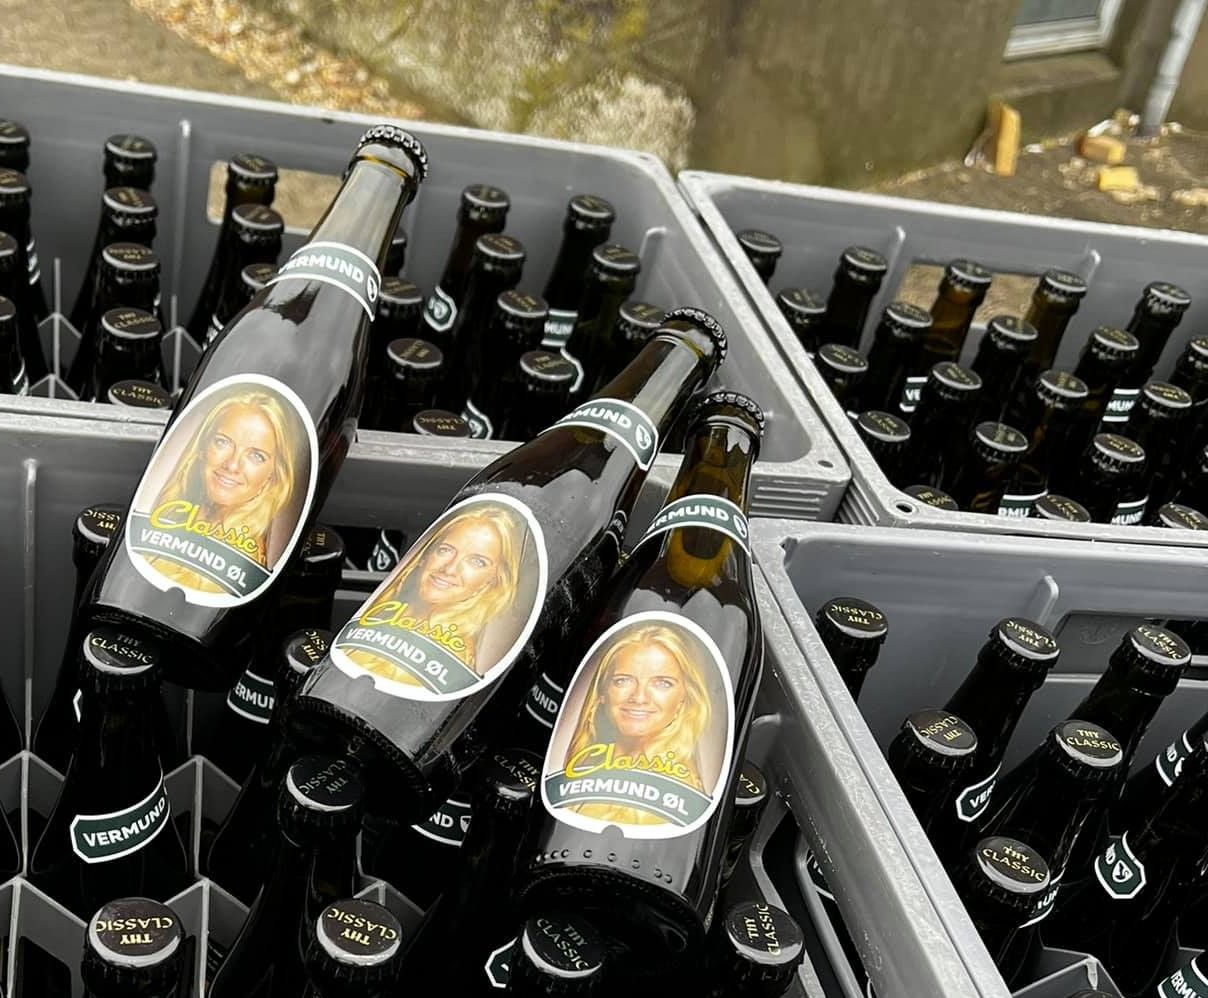 I weekenden blev der skabt røre, da Brian Nielsen, kommunalpolitiker i Thisted Kommune, delte et Facebookopslag, hvor han fremviste sin leverance af Vermund-øl. Foto: Brian Nielsen